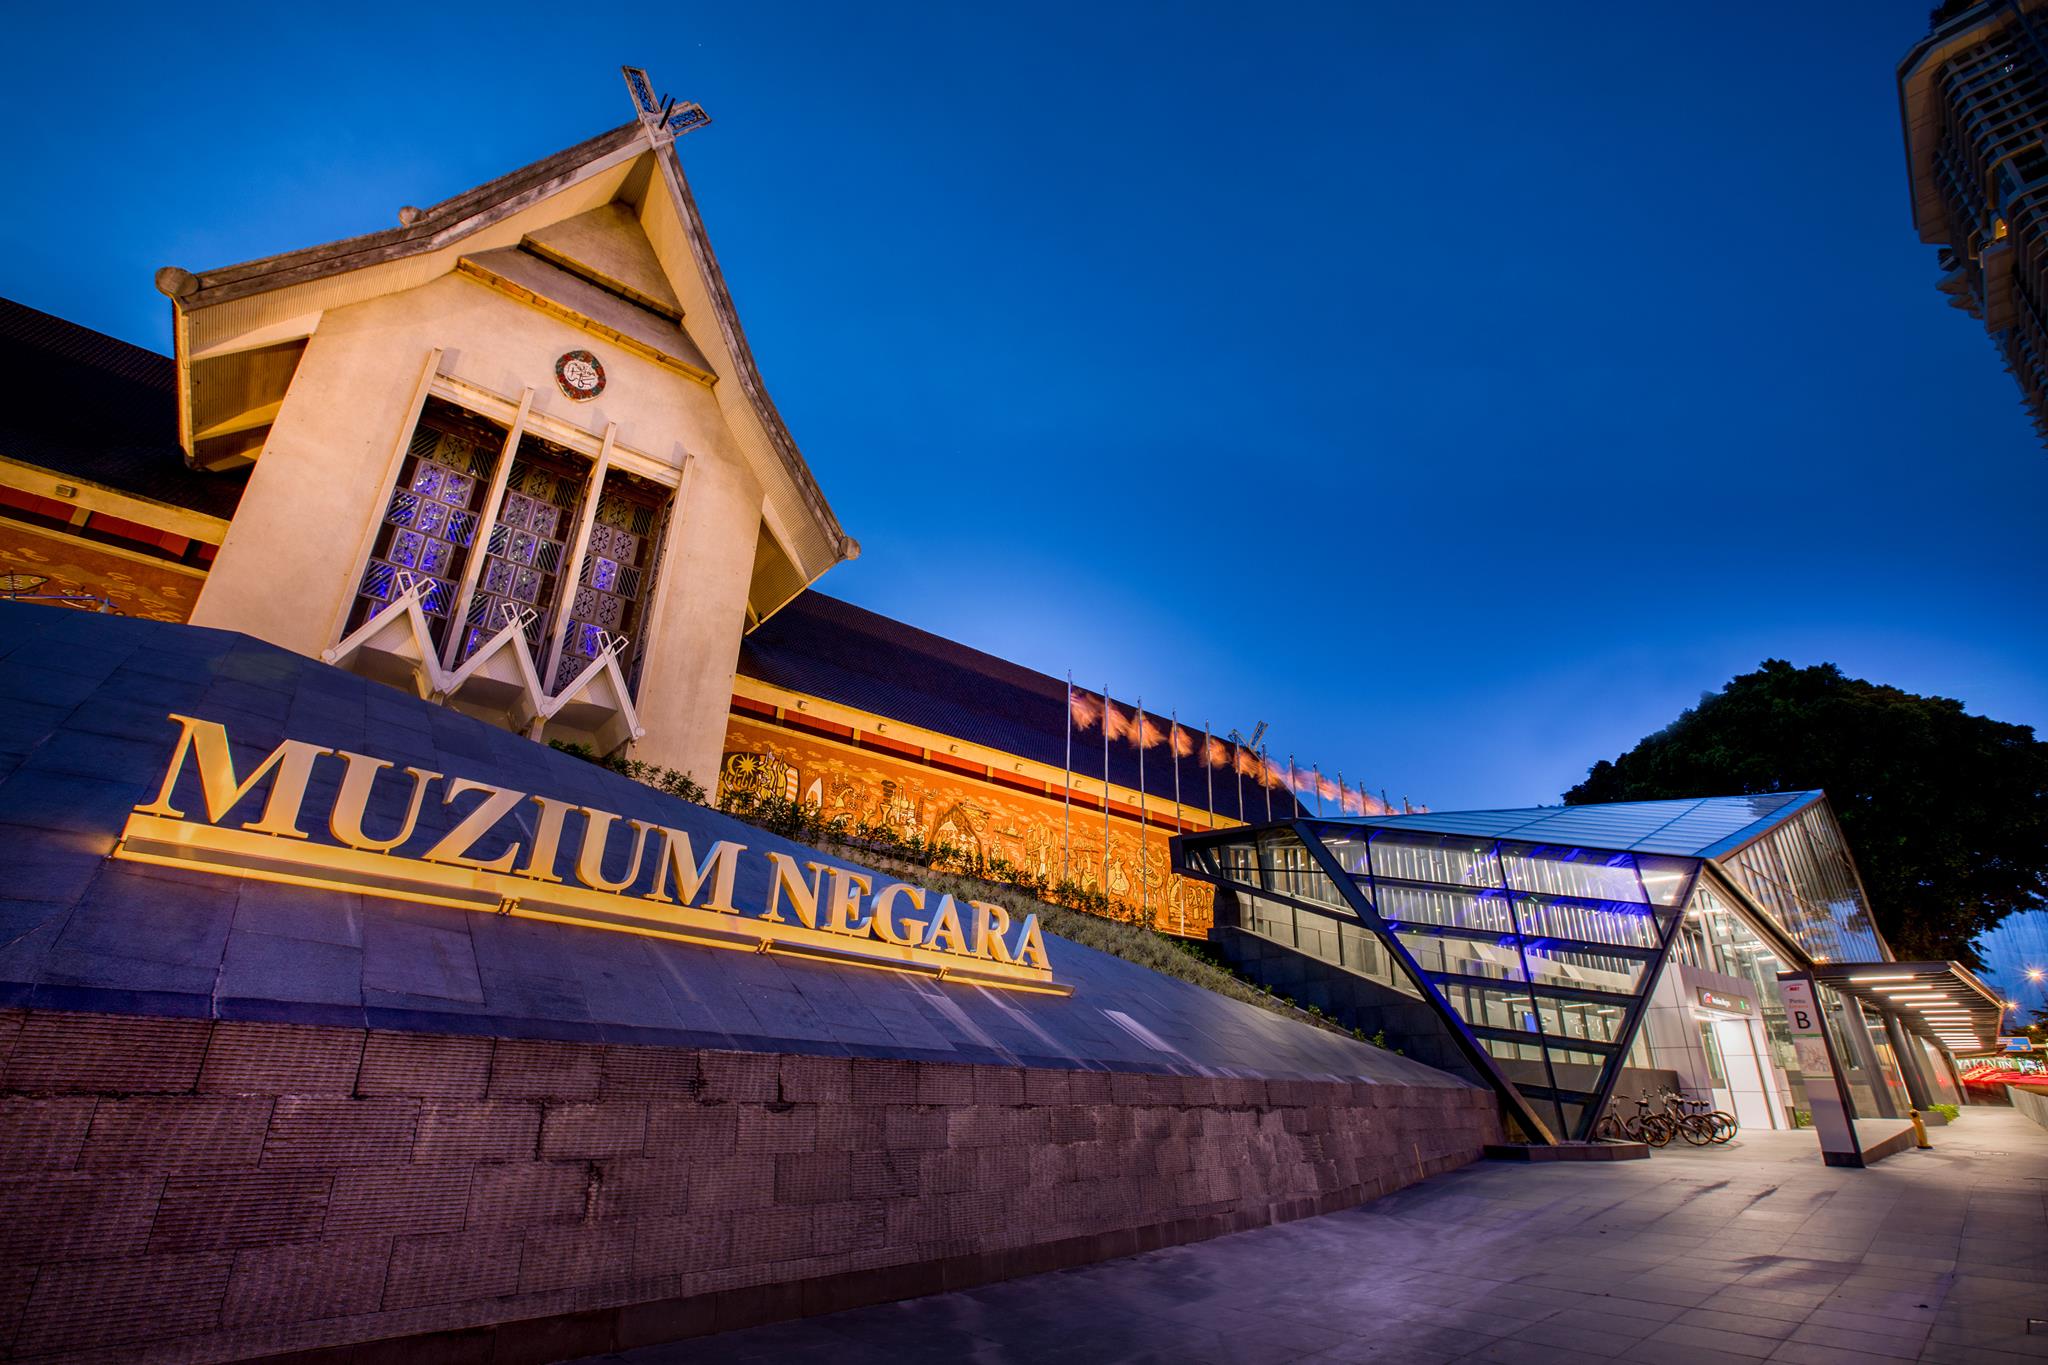 Muzium Negara MRT Station, MRT station next to the National Museum and